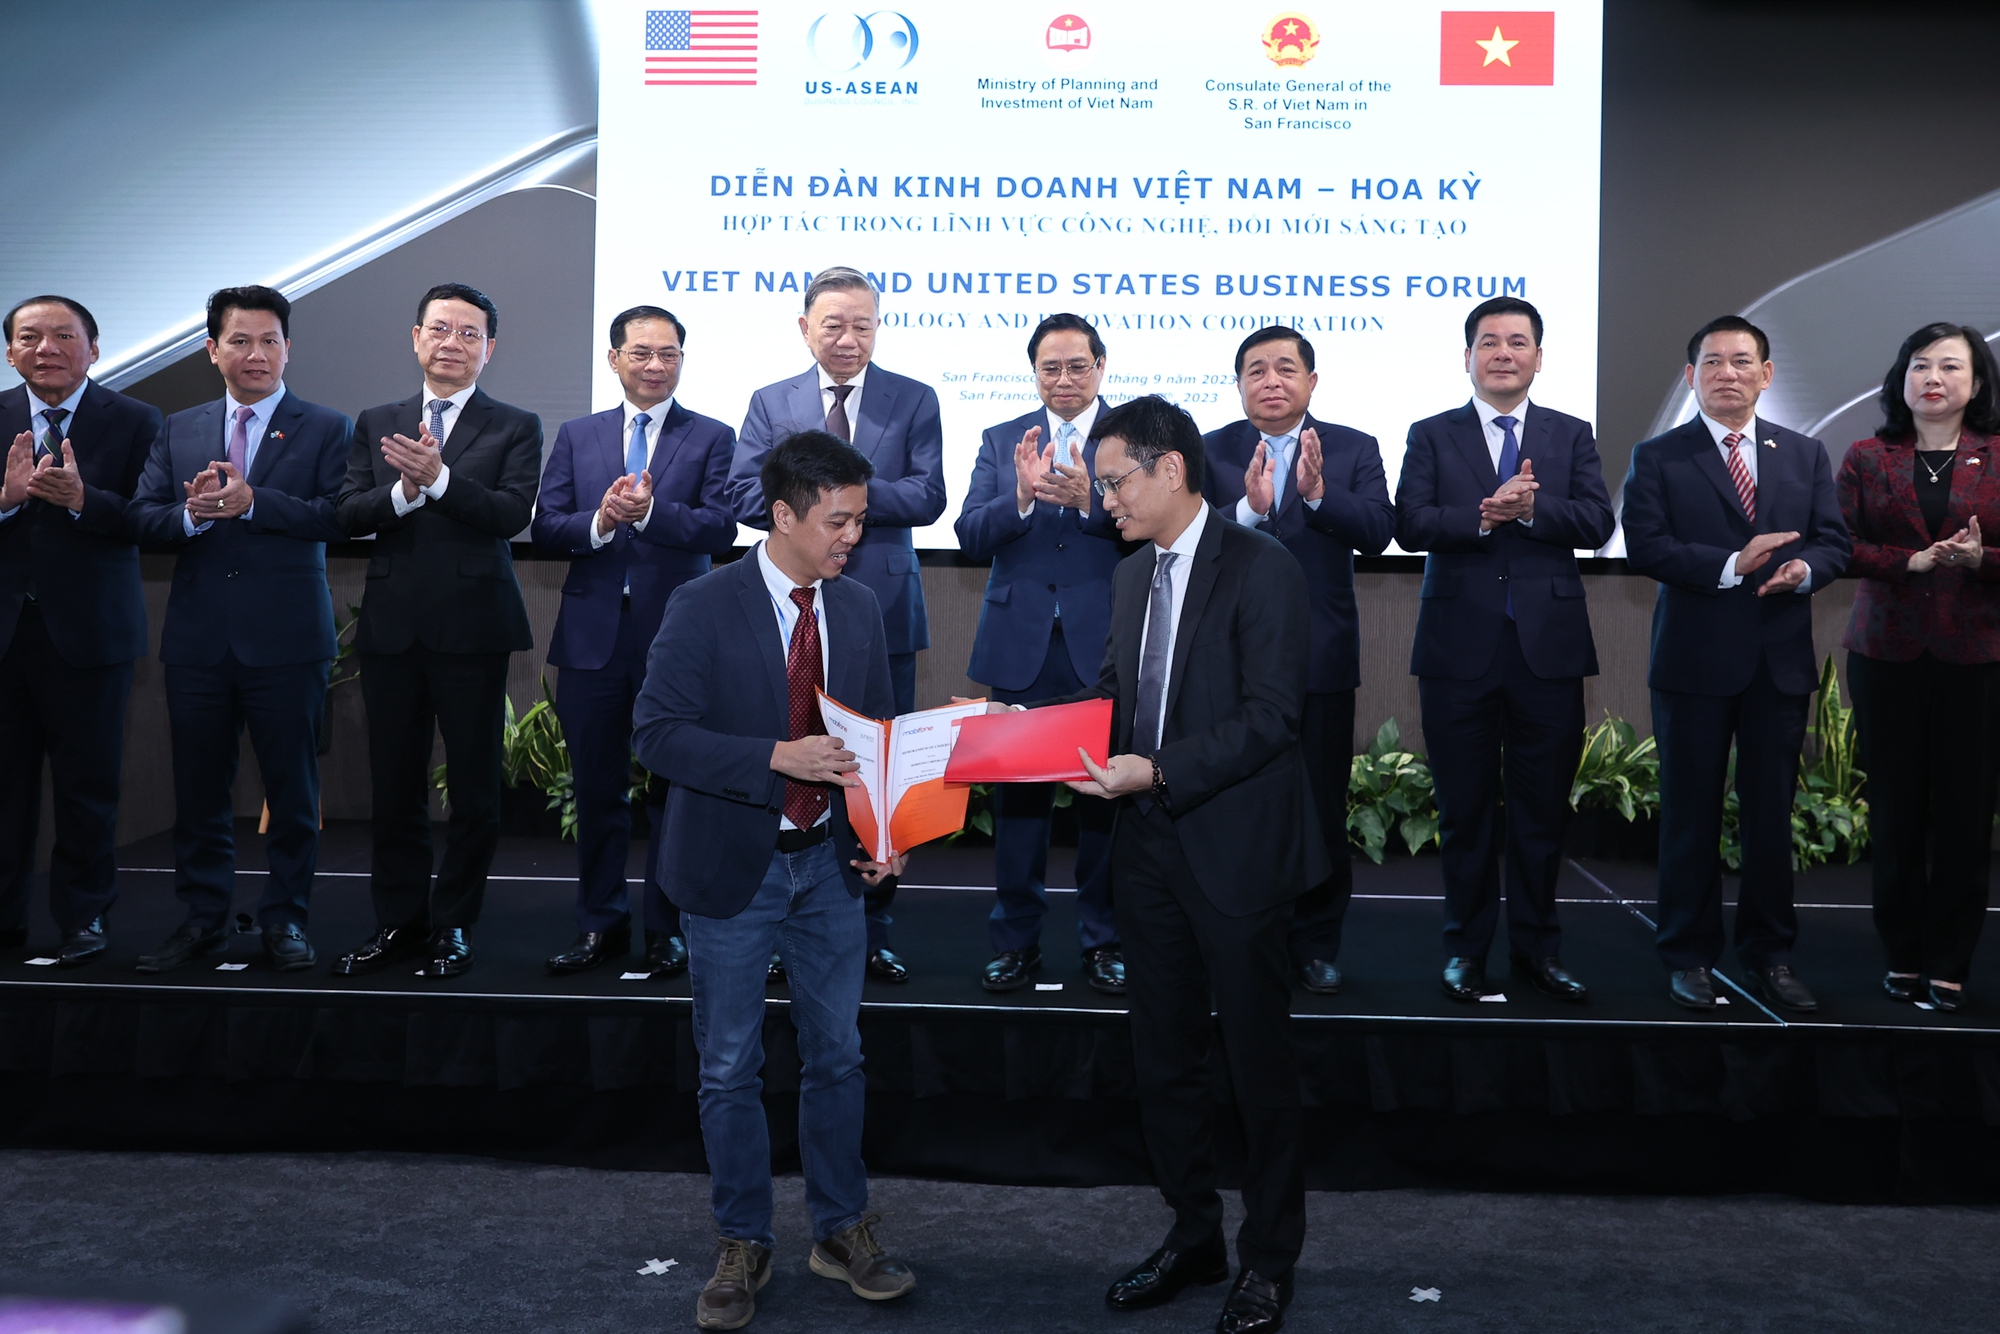 Bước ngoặt mạnh mẽ và tích cực để doanh nghiệp Việt Nam - Hoa Kỳ hợp tác đầu tư - Ảnh 8.